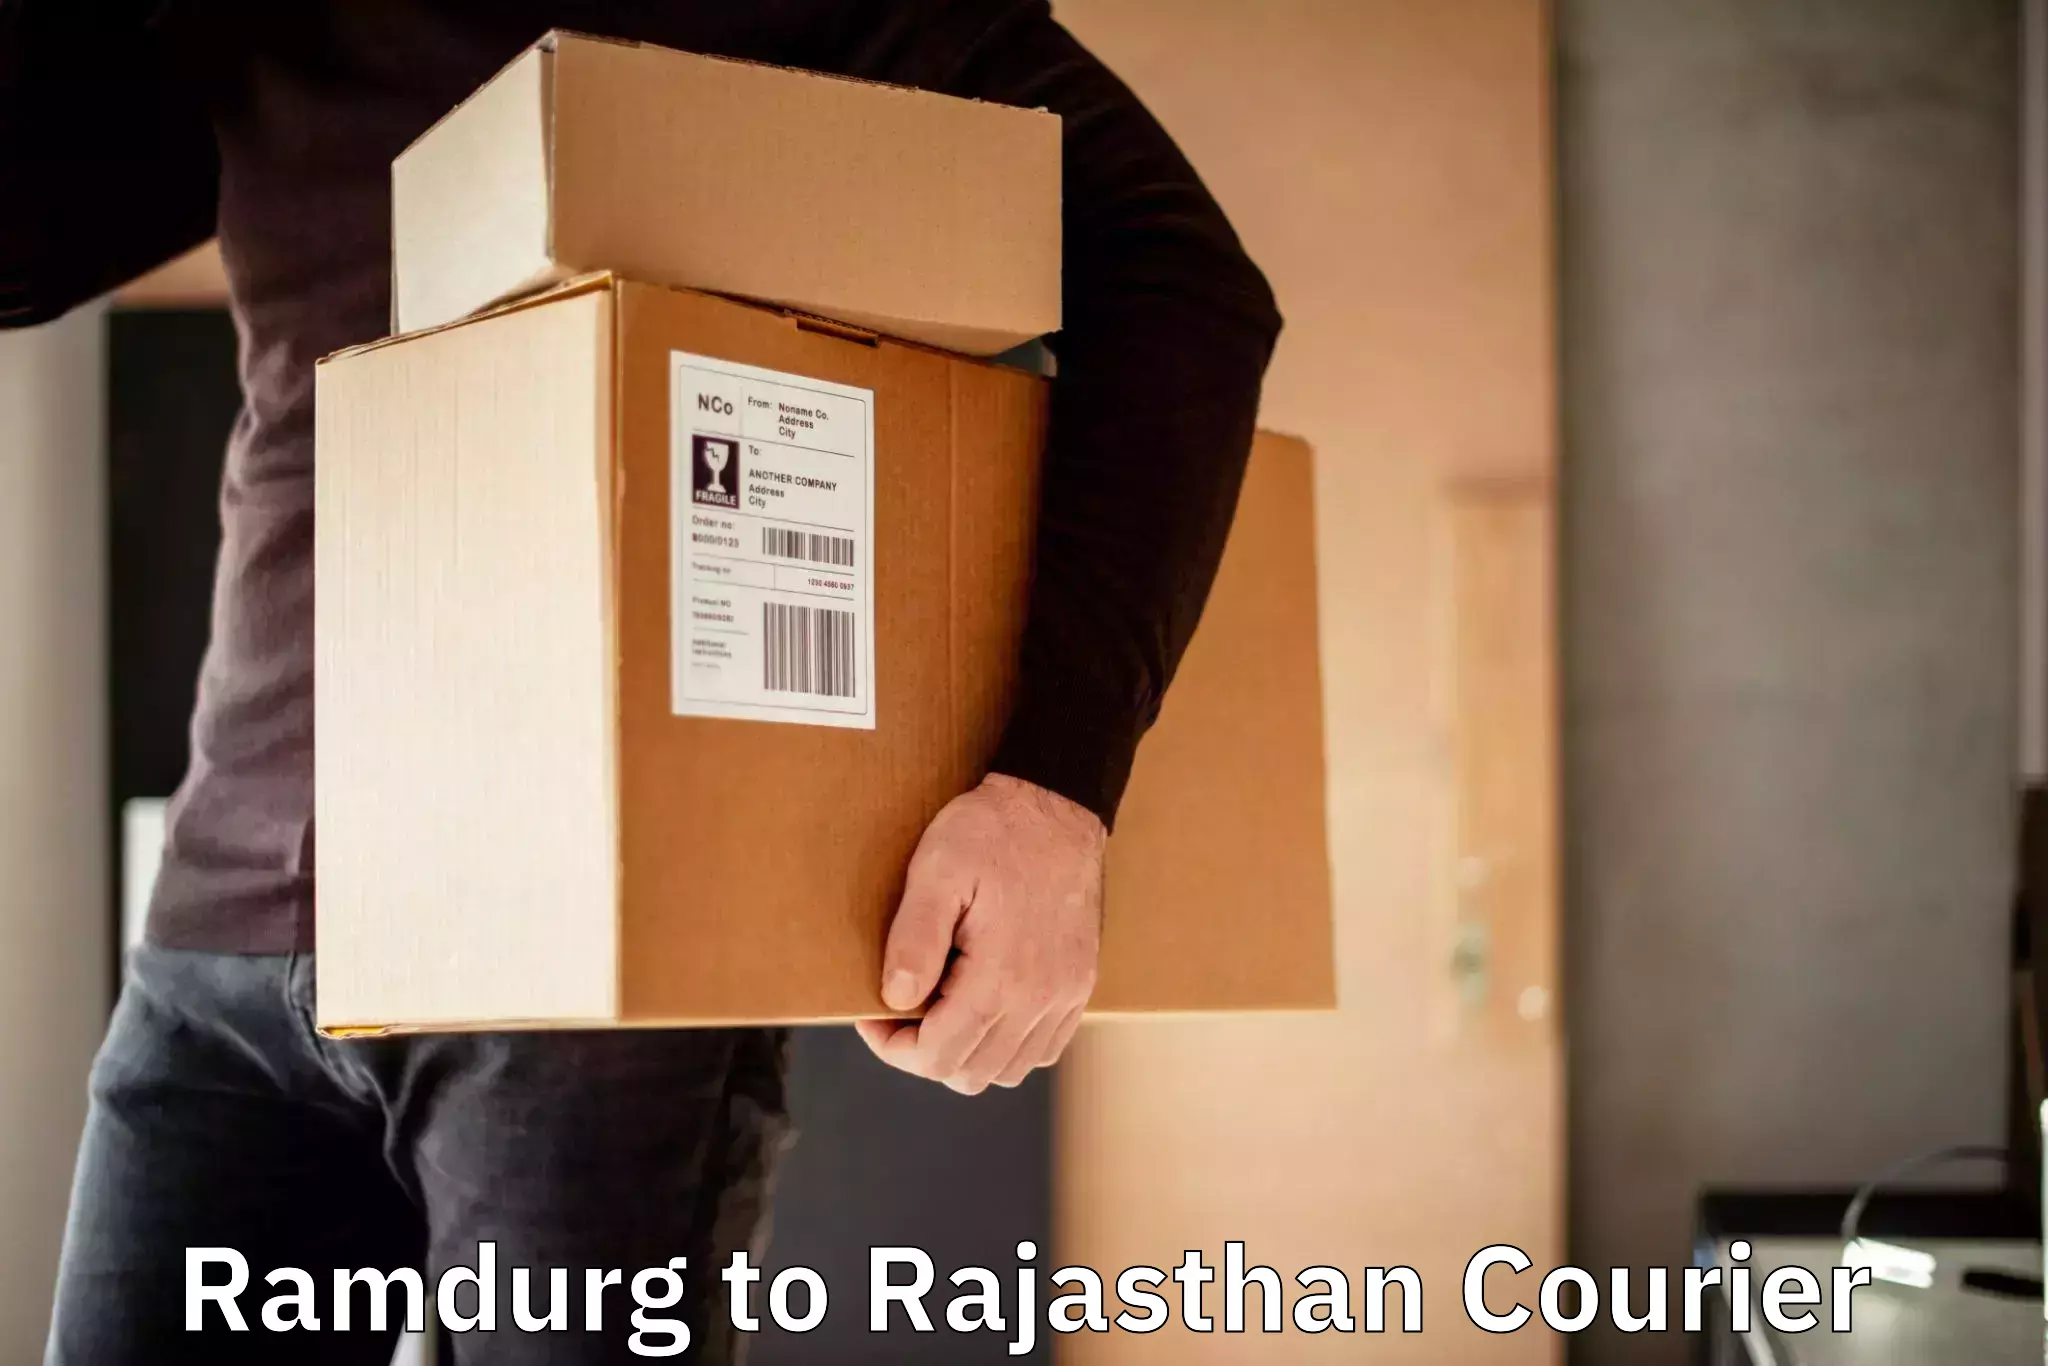 International parcel service Ramdurg to Behror